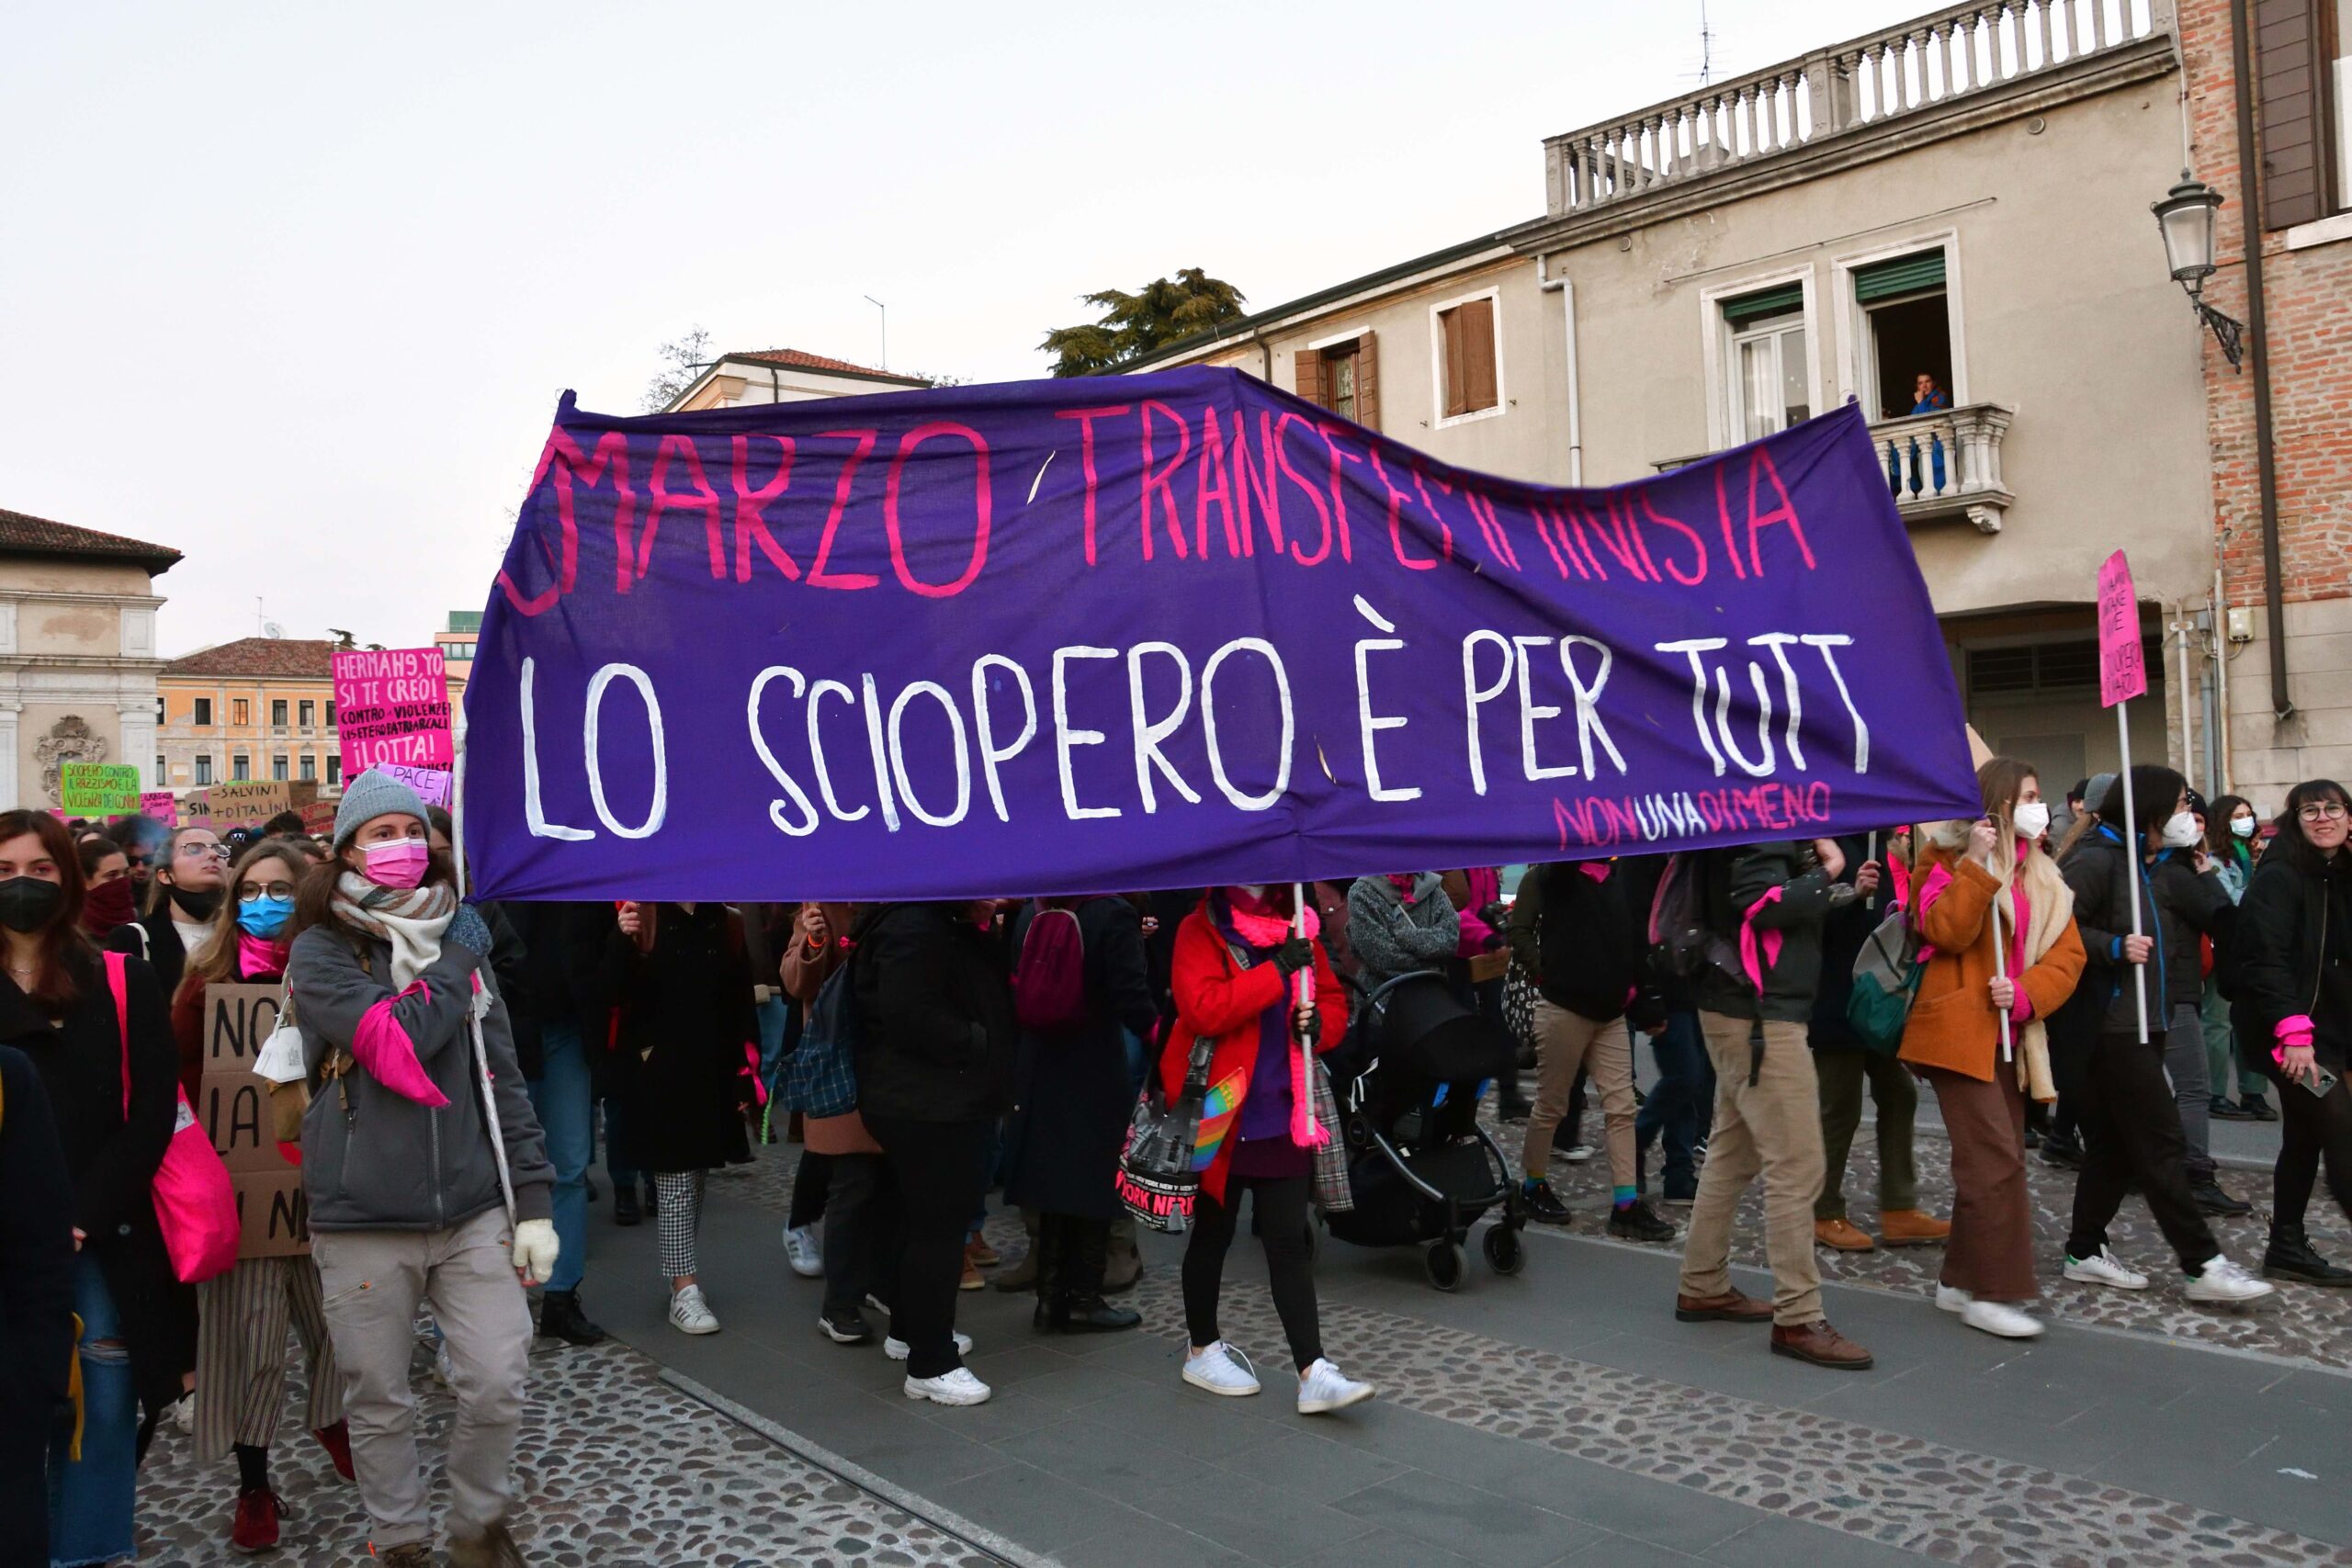 Sindacato di Base ADL Cobas - "Meno mimose, più salario e diritti" 8 marzo di lotta a Padova